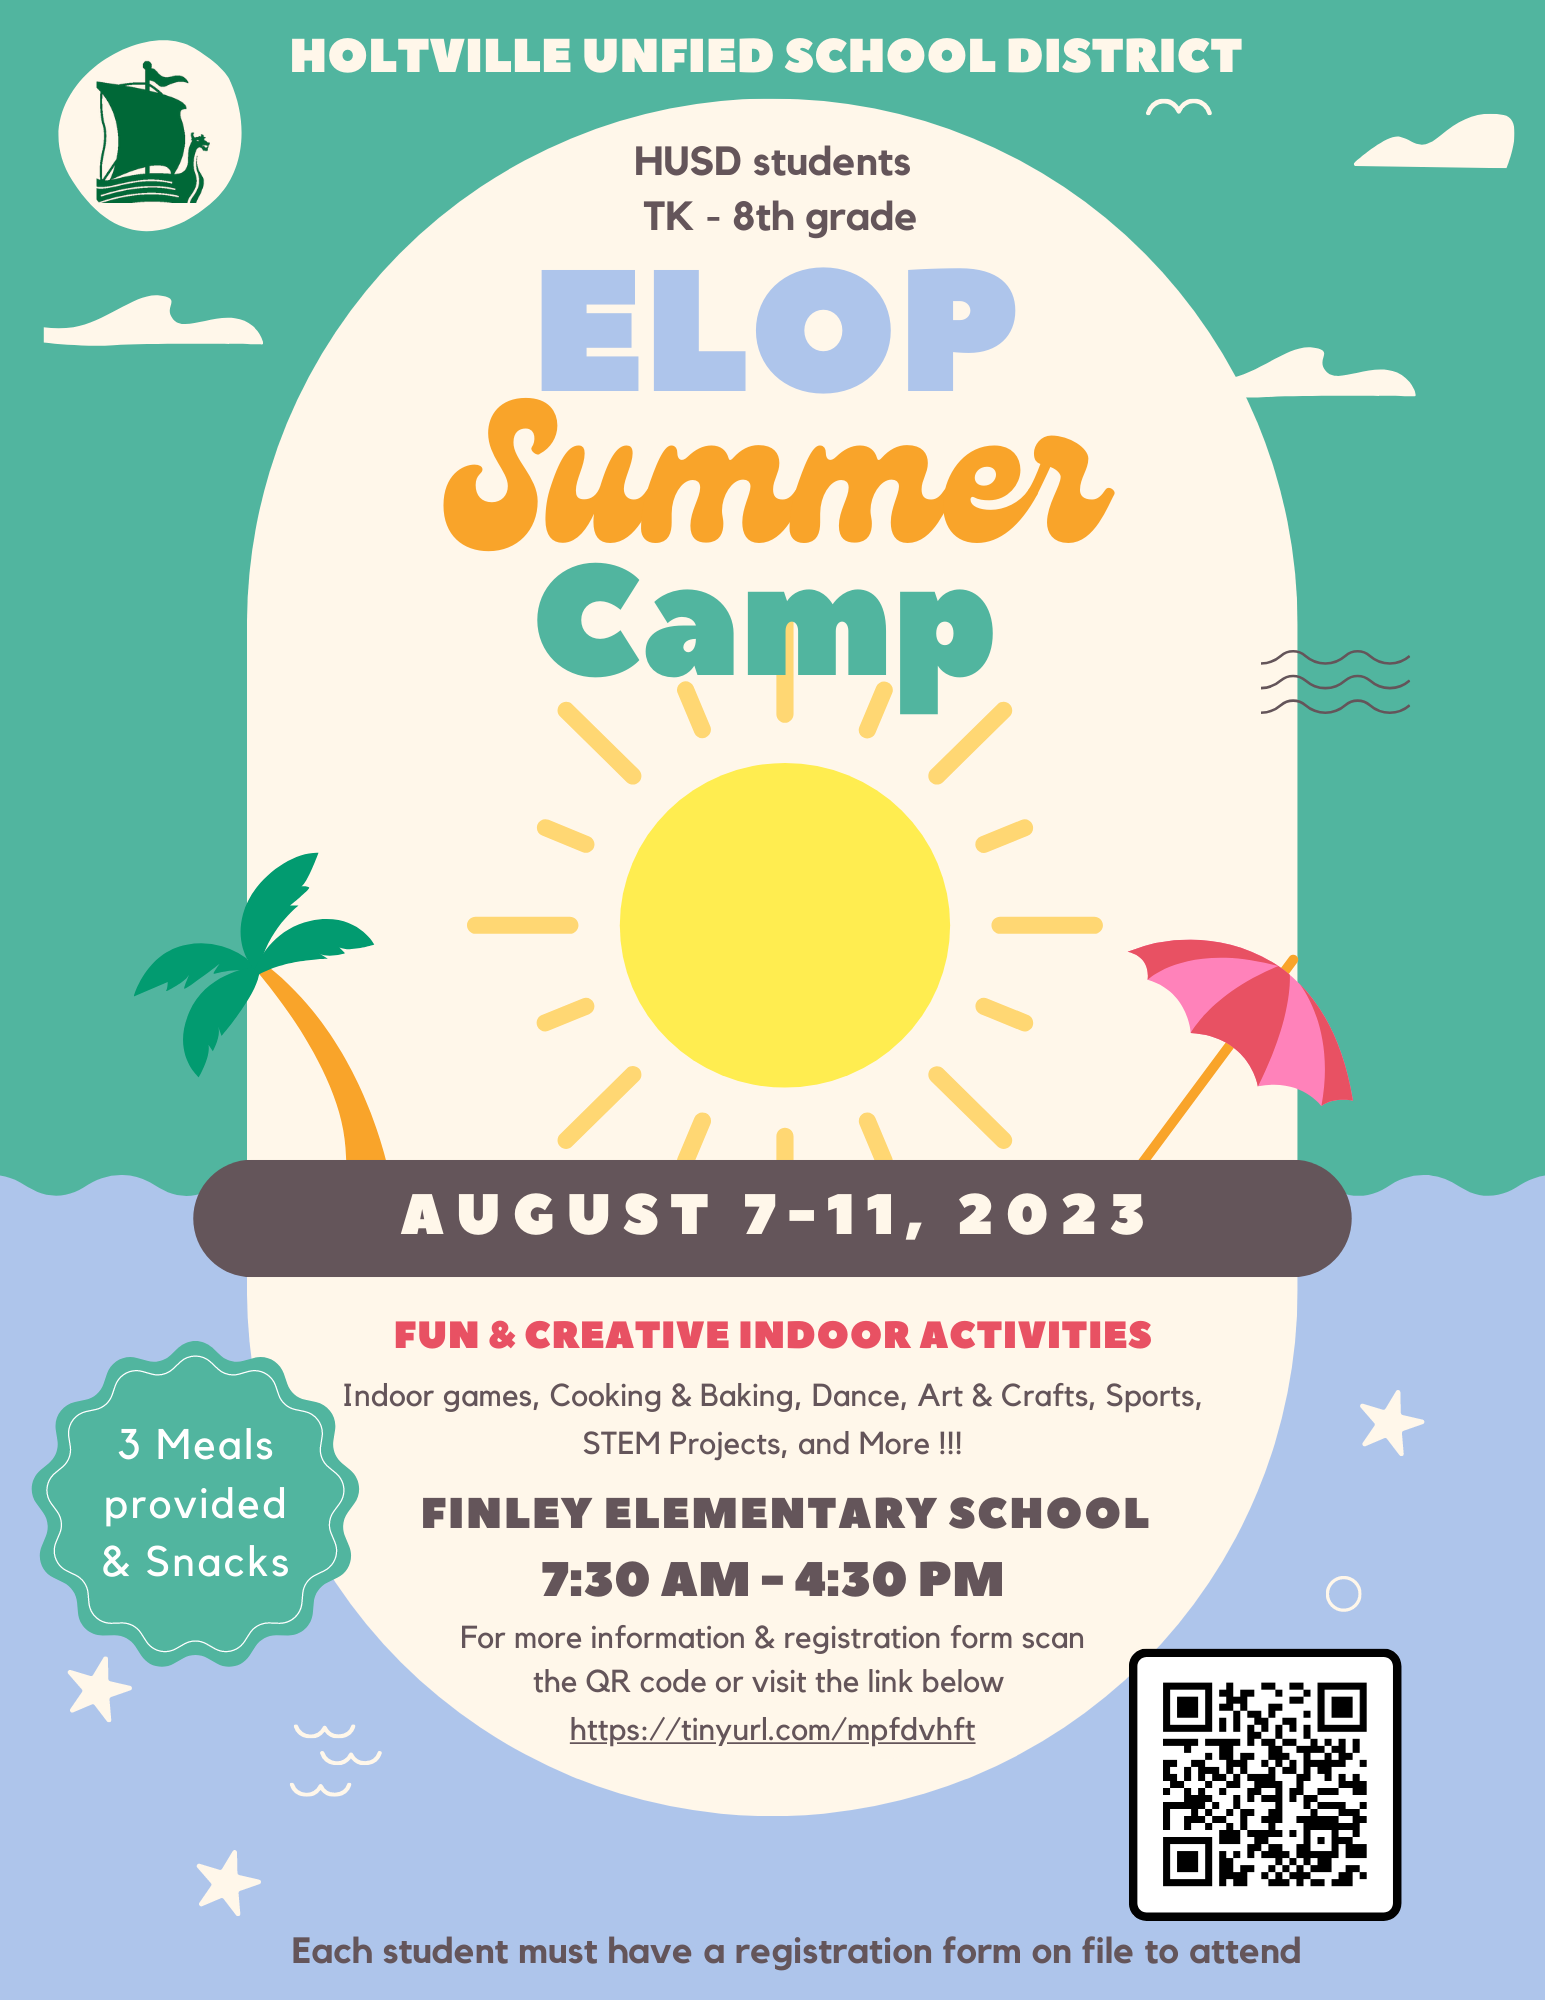 ELOP Summer Camp Flyer